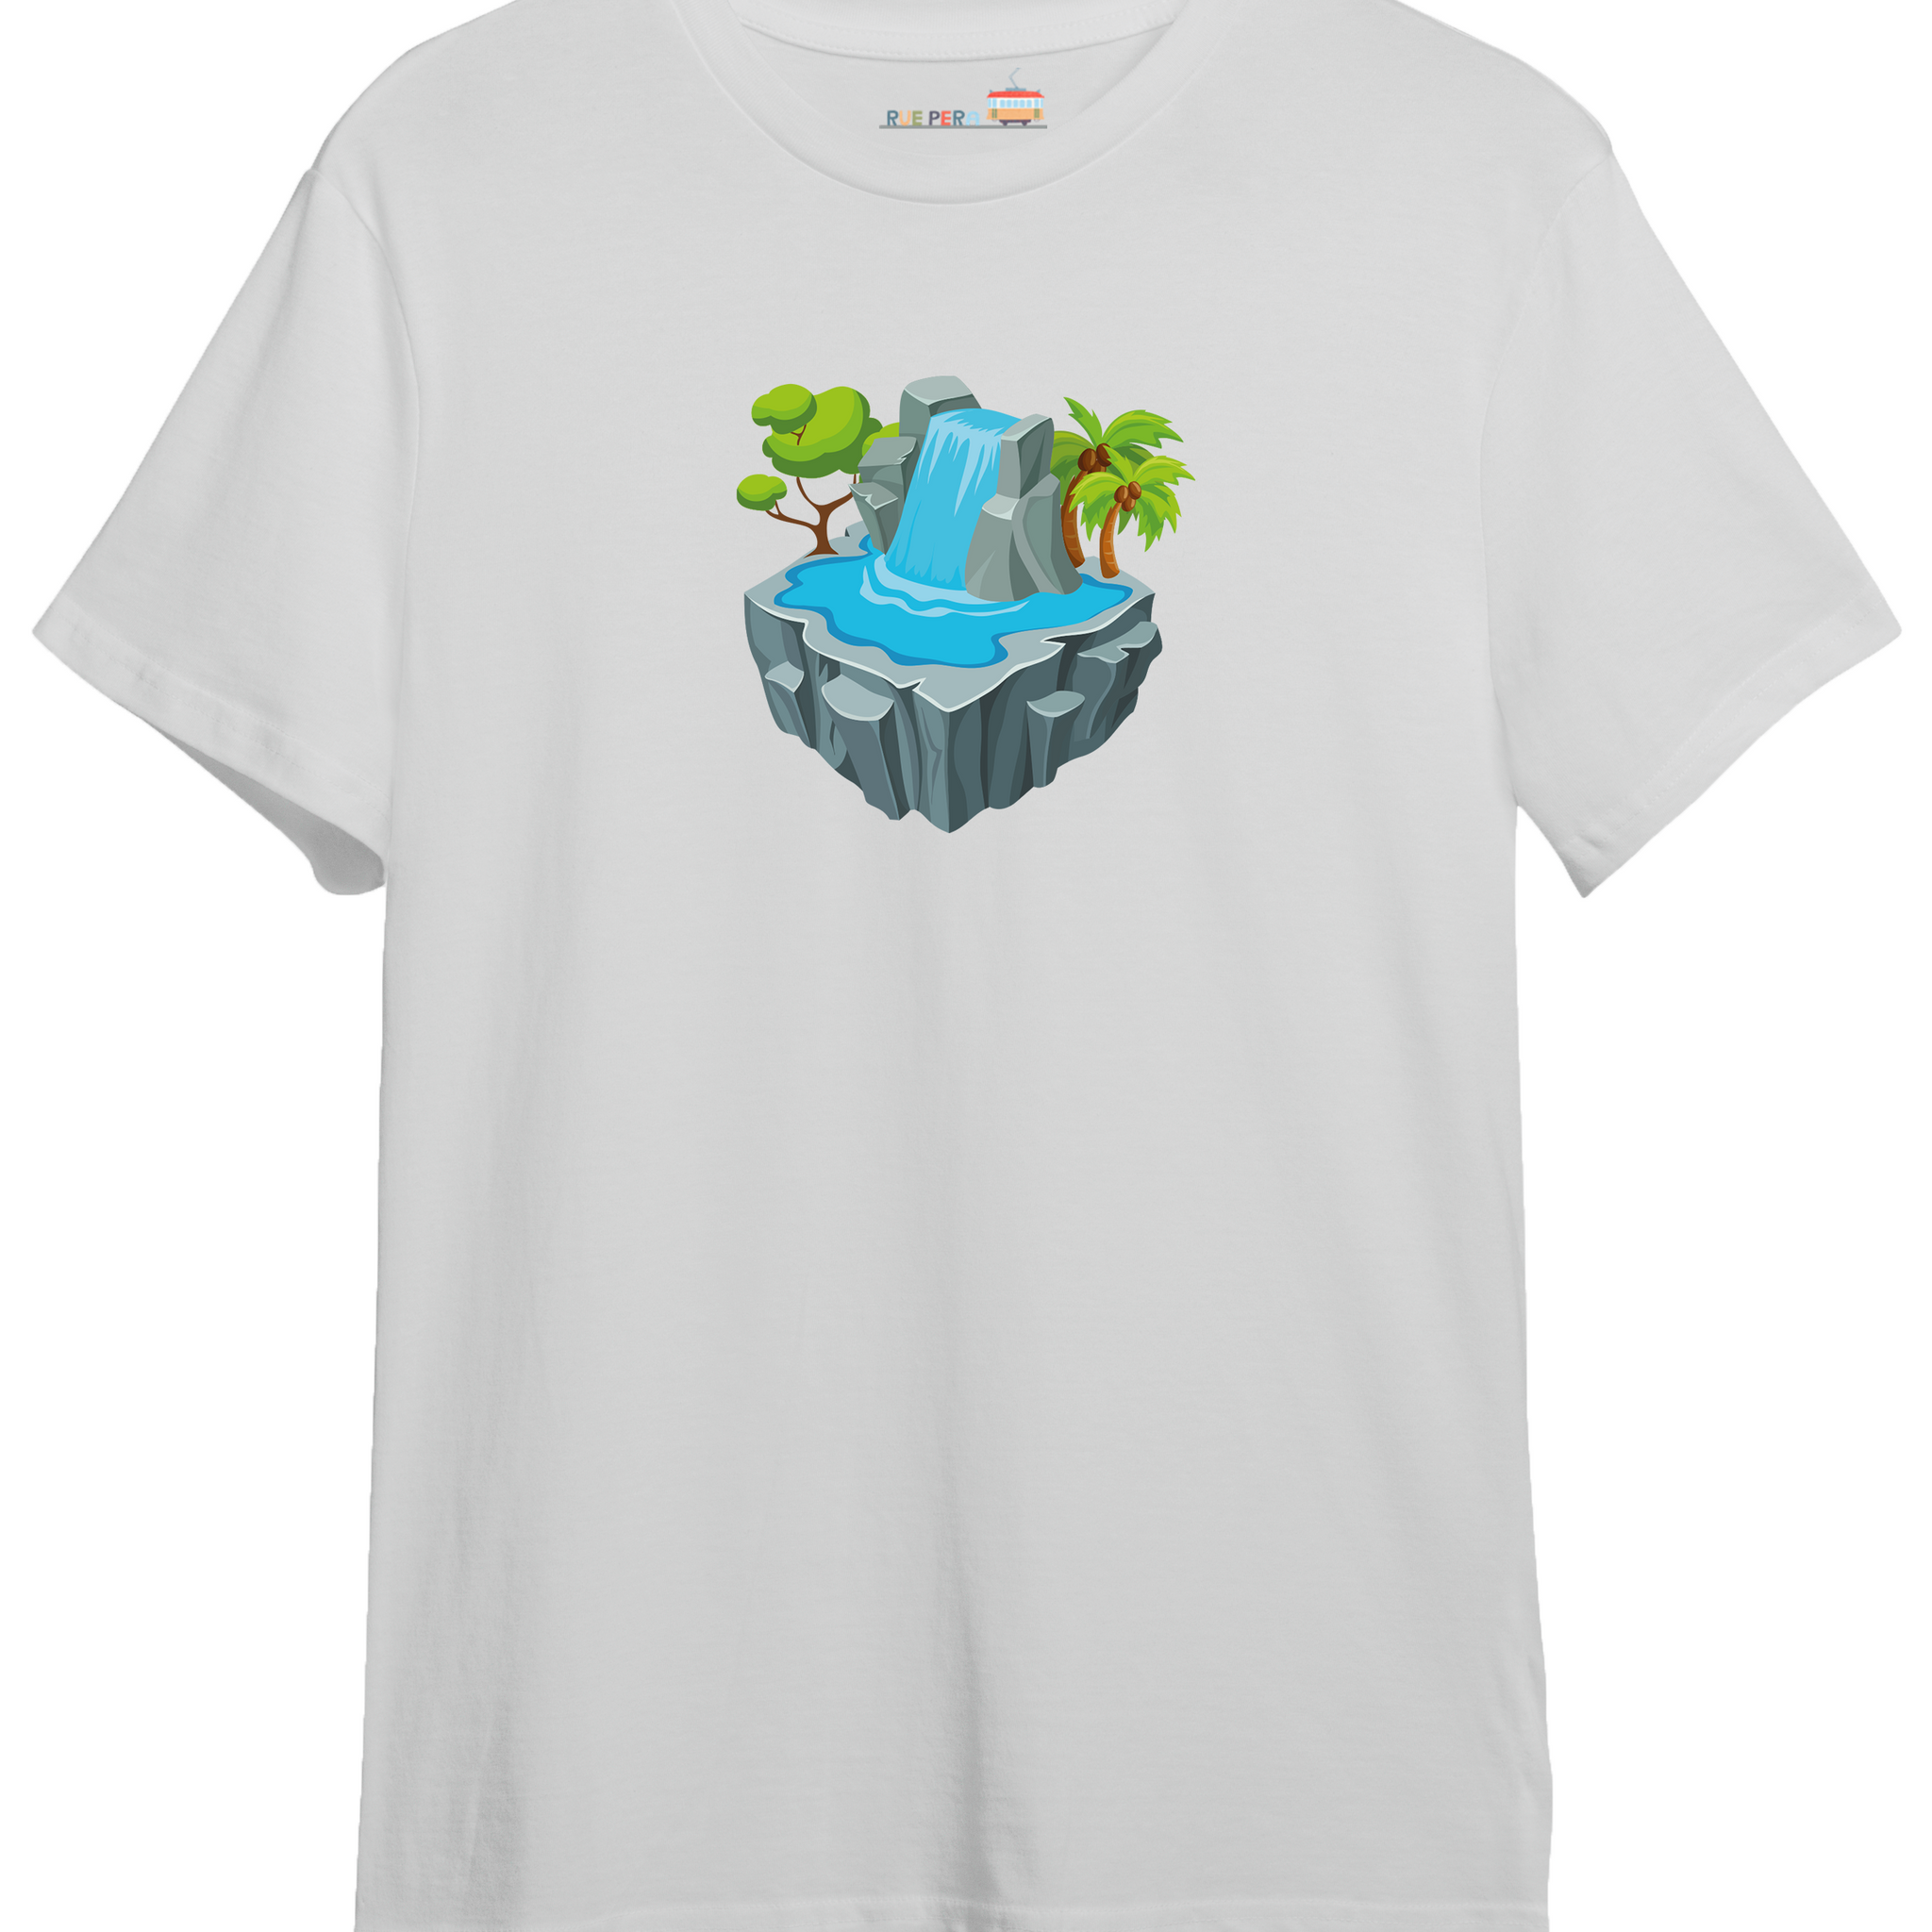 Waterfall Island - Oversize Tshirt